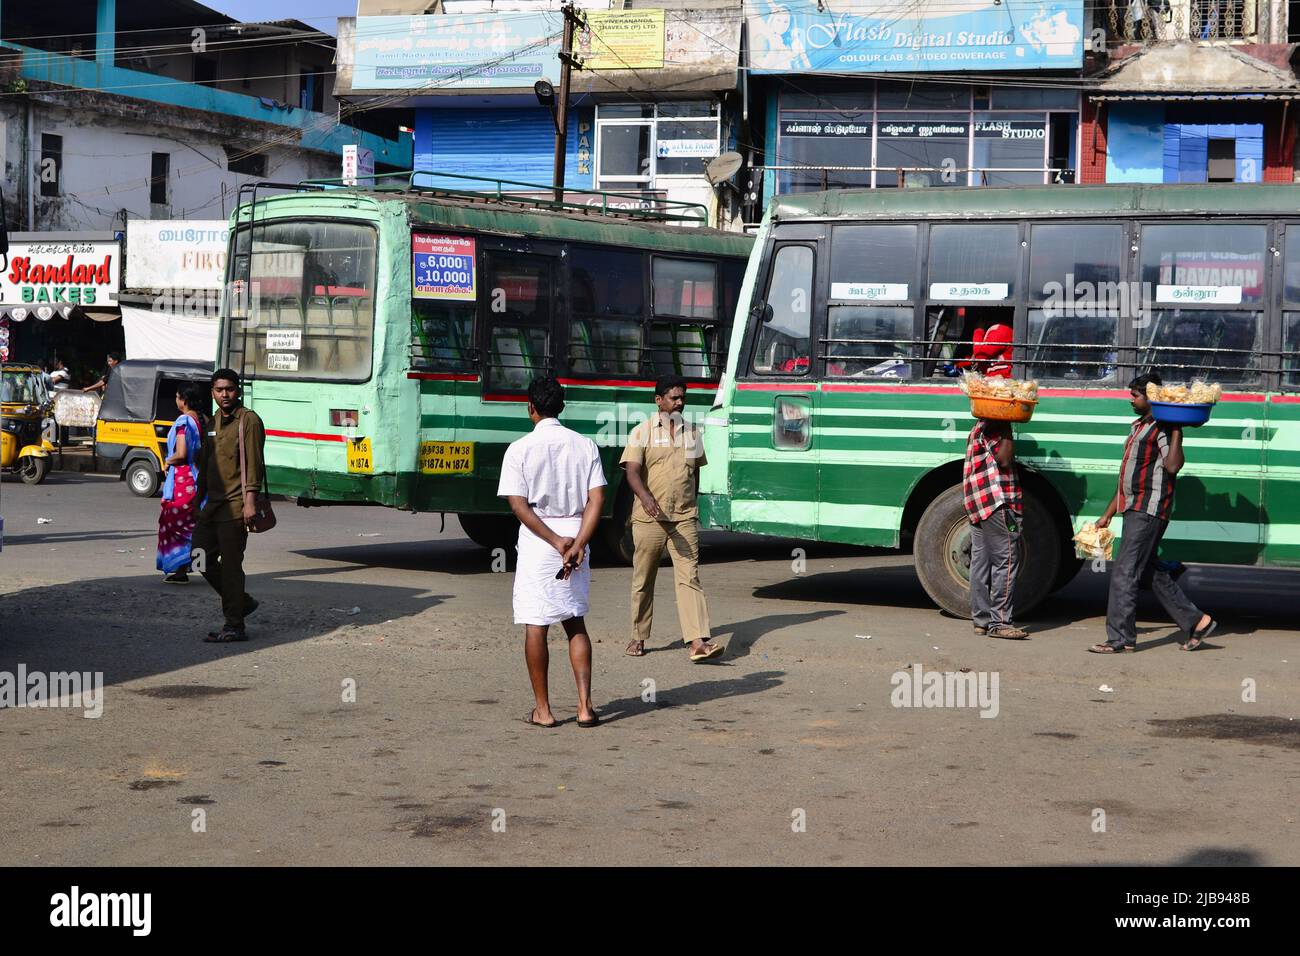 Sultan Bathery, Indien - Januar, 2017: Alte grüne indische Busse warten am Busbahnhof auf Fahrgäste. Männer mit Körben verkaufen Snacks an Busreisende Stockfoto